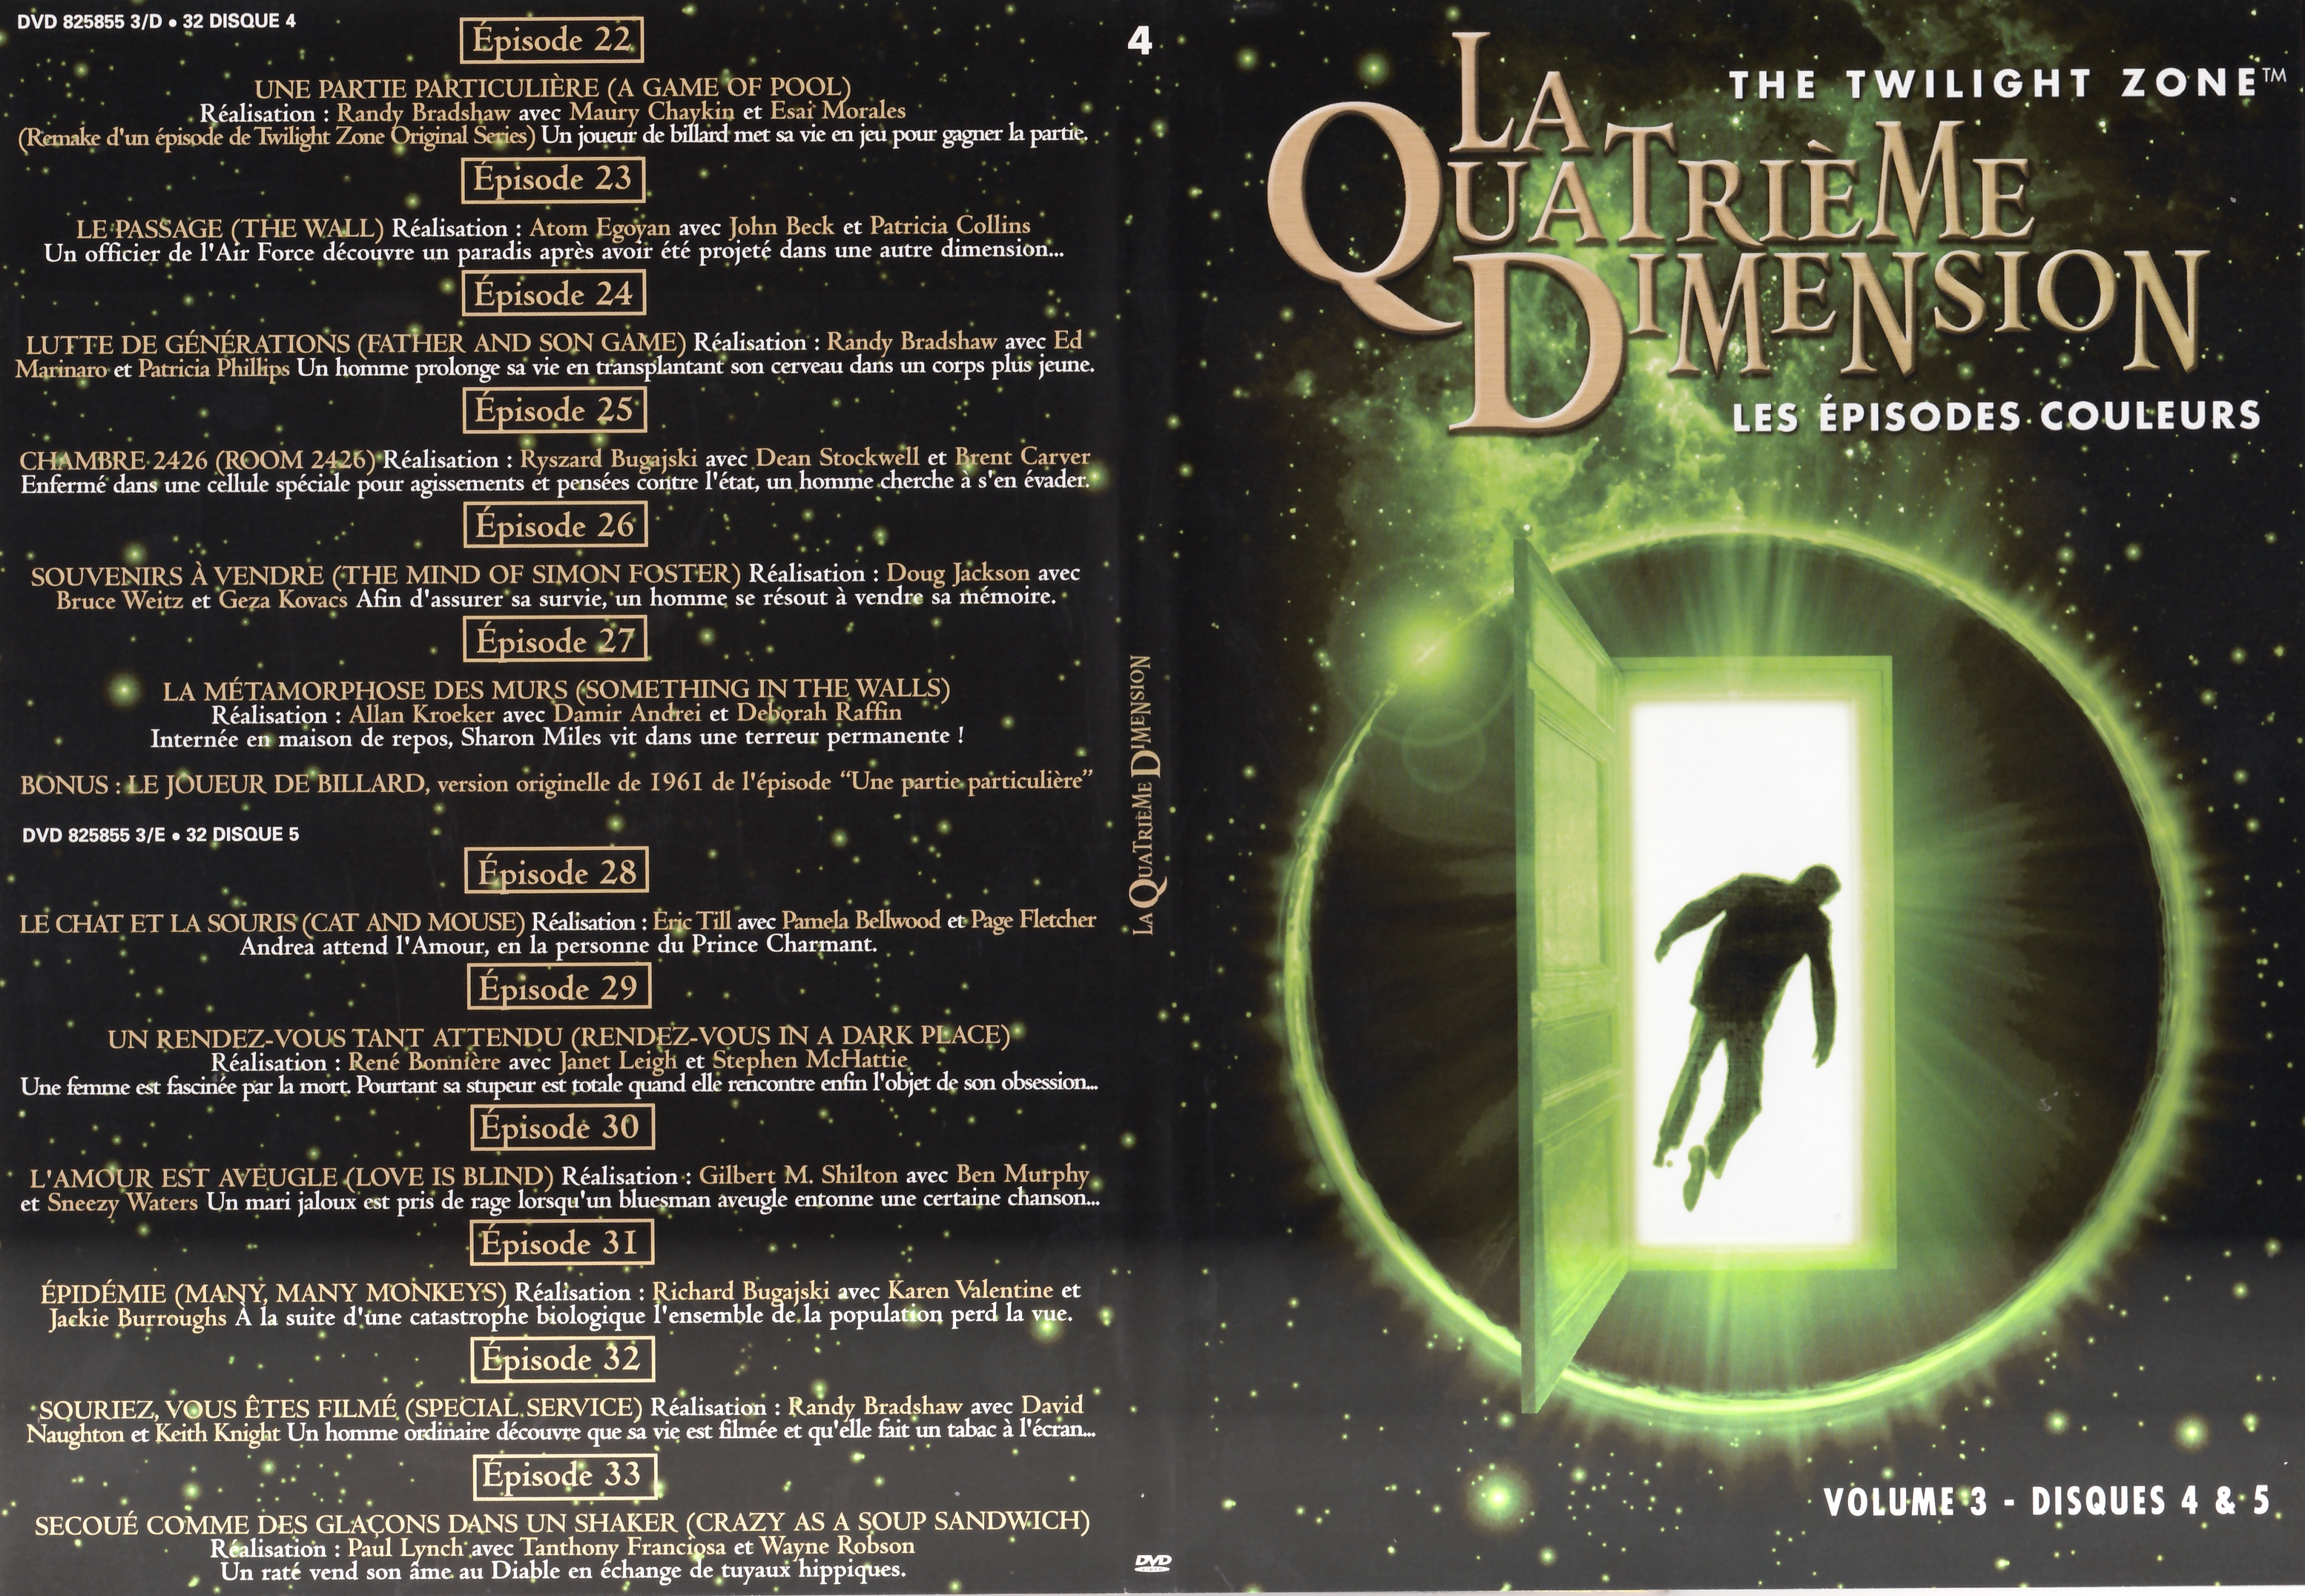 Jaquette DVD La quatrime dimension - Episodes couleurs vol 3 DVD 4